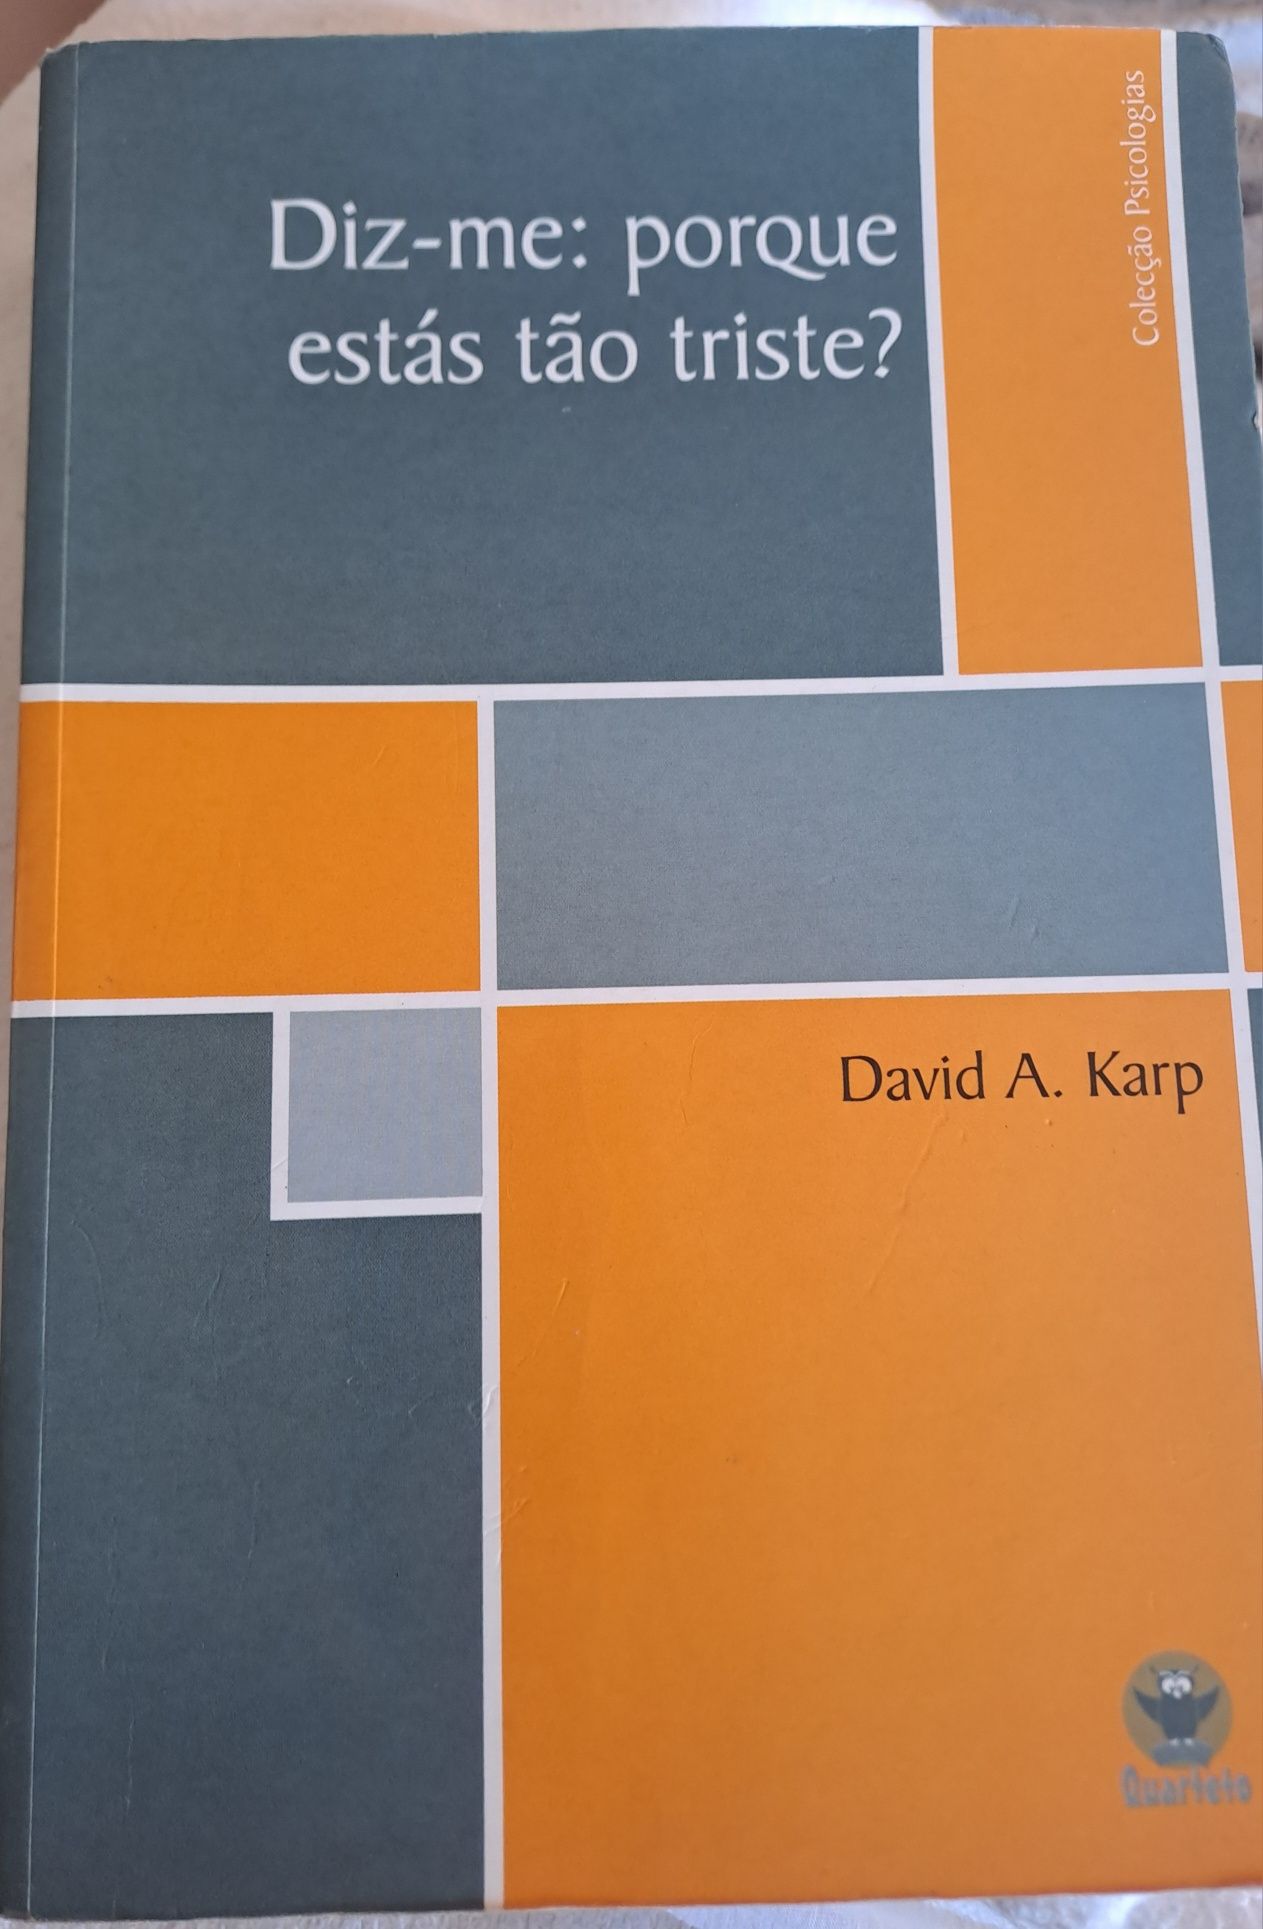 Livro
Diz-me porque estás tão triste
David A. Karp